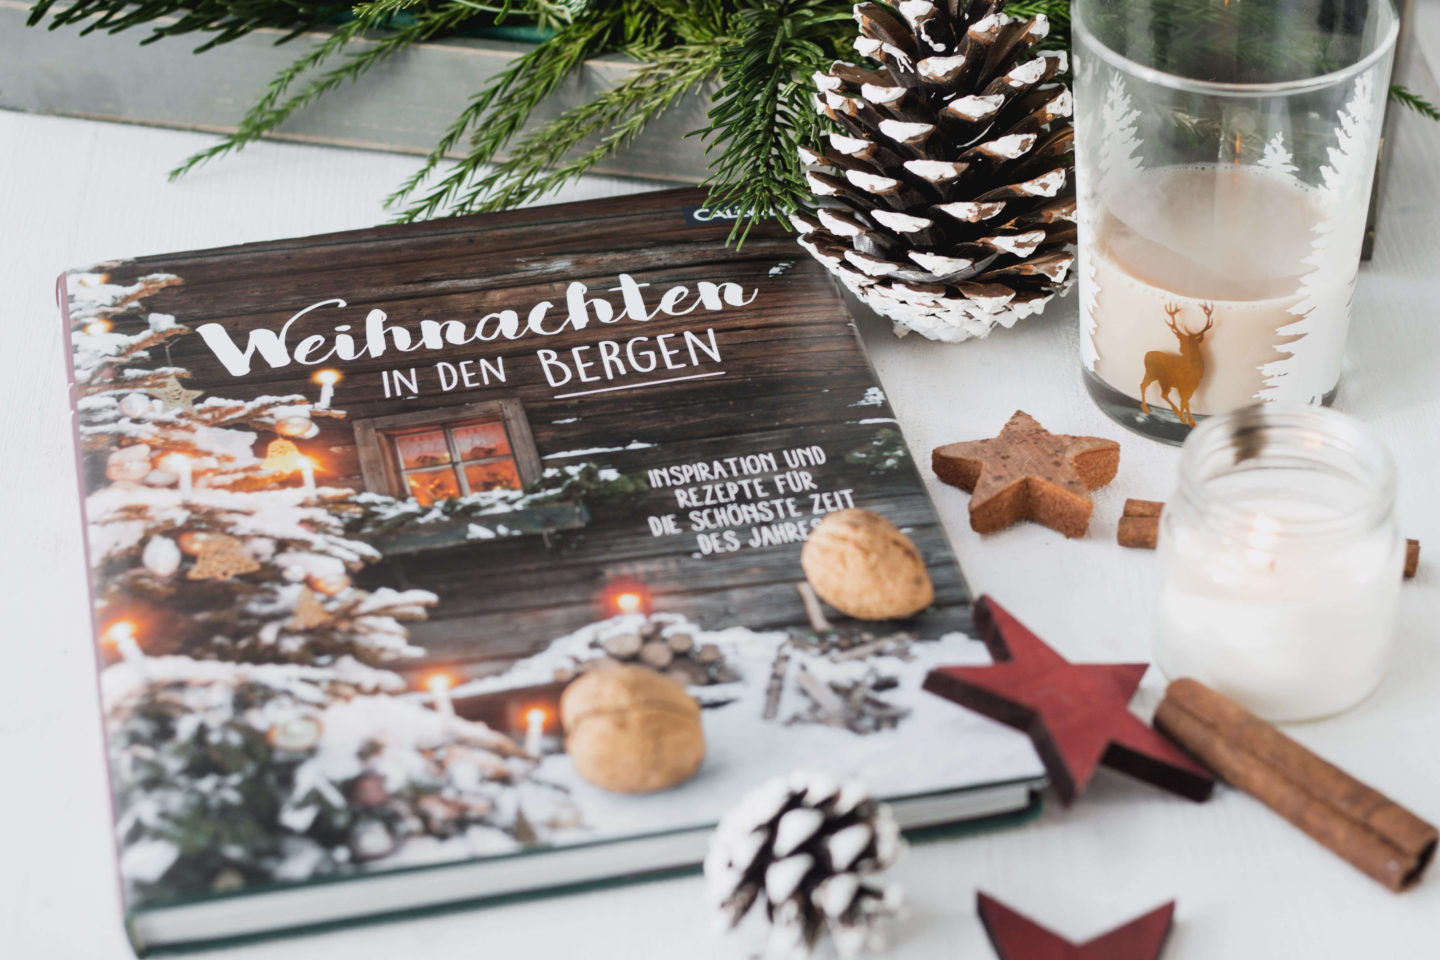 Weihnachten in den Bergen-Kochbuch- ländliche Weihnachtstradition-Adventszeit-Hygge-Auszeit-Winter-Dein HomeSpa – Food & Lifestyleblog aus dem Mostviertel